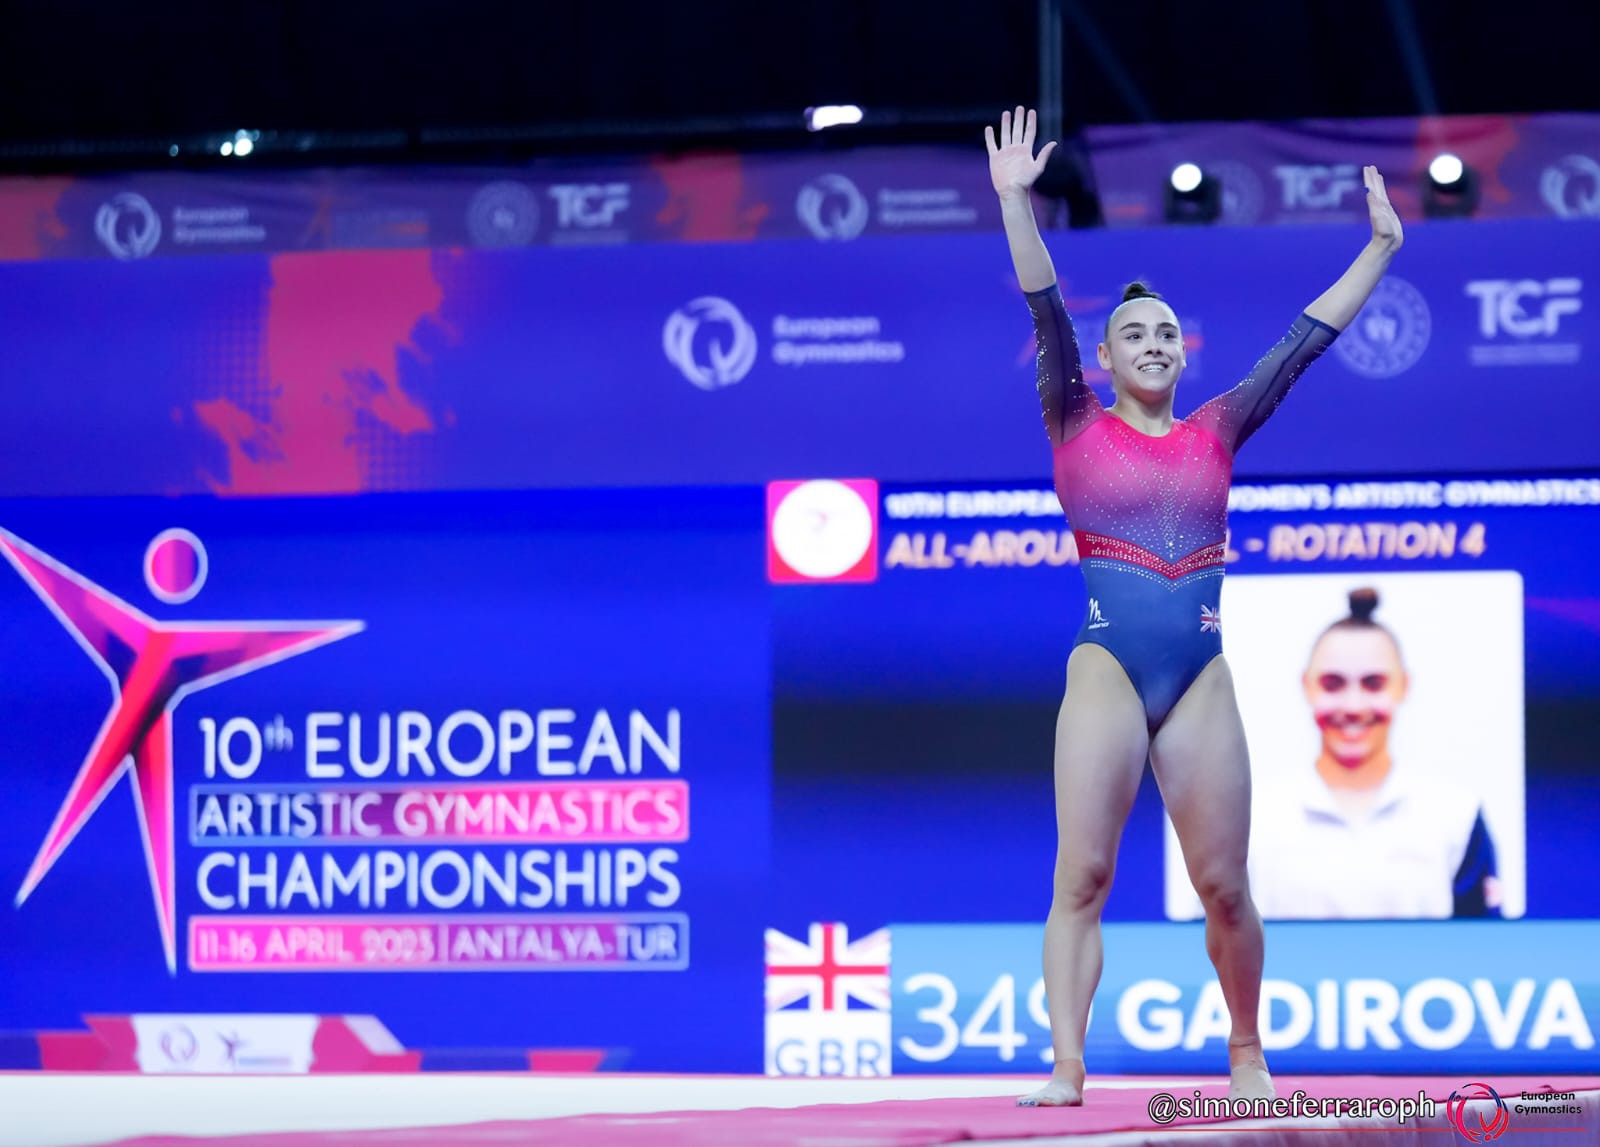 Gadirova triumphs in Turkey with all-around title at European Artistic Gymnastics Championships